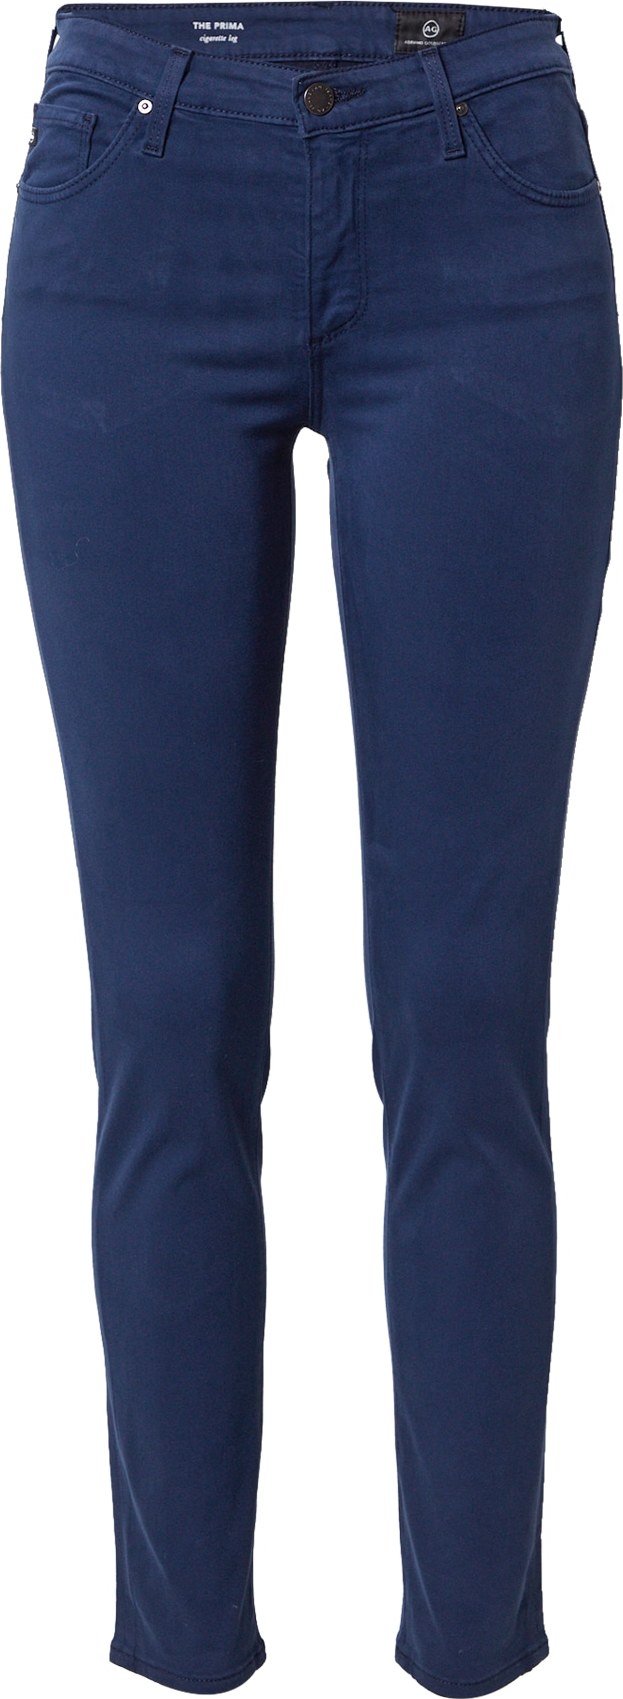 Džíny 'PRIMA' ag jeans marine modrá